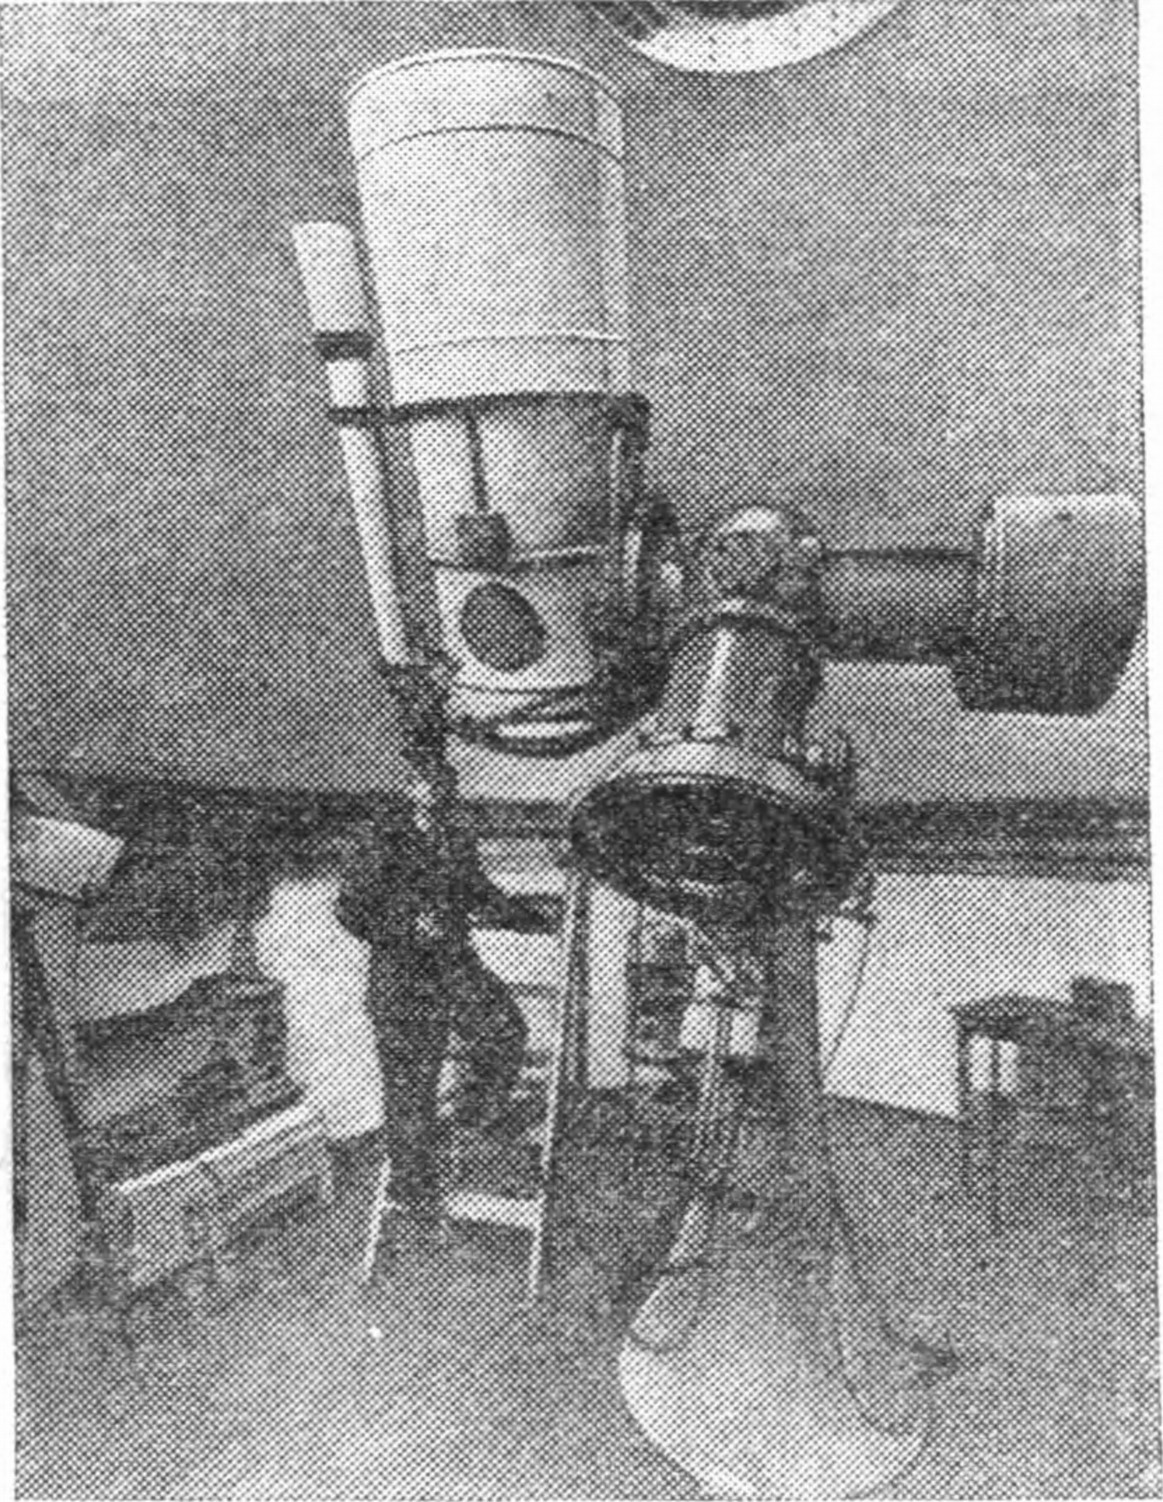 Рис. 9. Телескоп Максутова (о котором мы подробно расскажем дальше), установленный на Пулковской обсерватории. В руках у наблюдателя — клавиши управления, позволяющие направлять телескоп в нужную точку неба простым нажатием кнопок